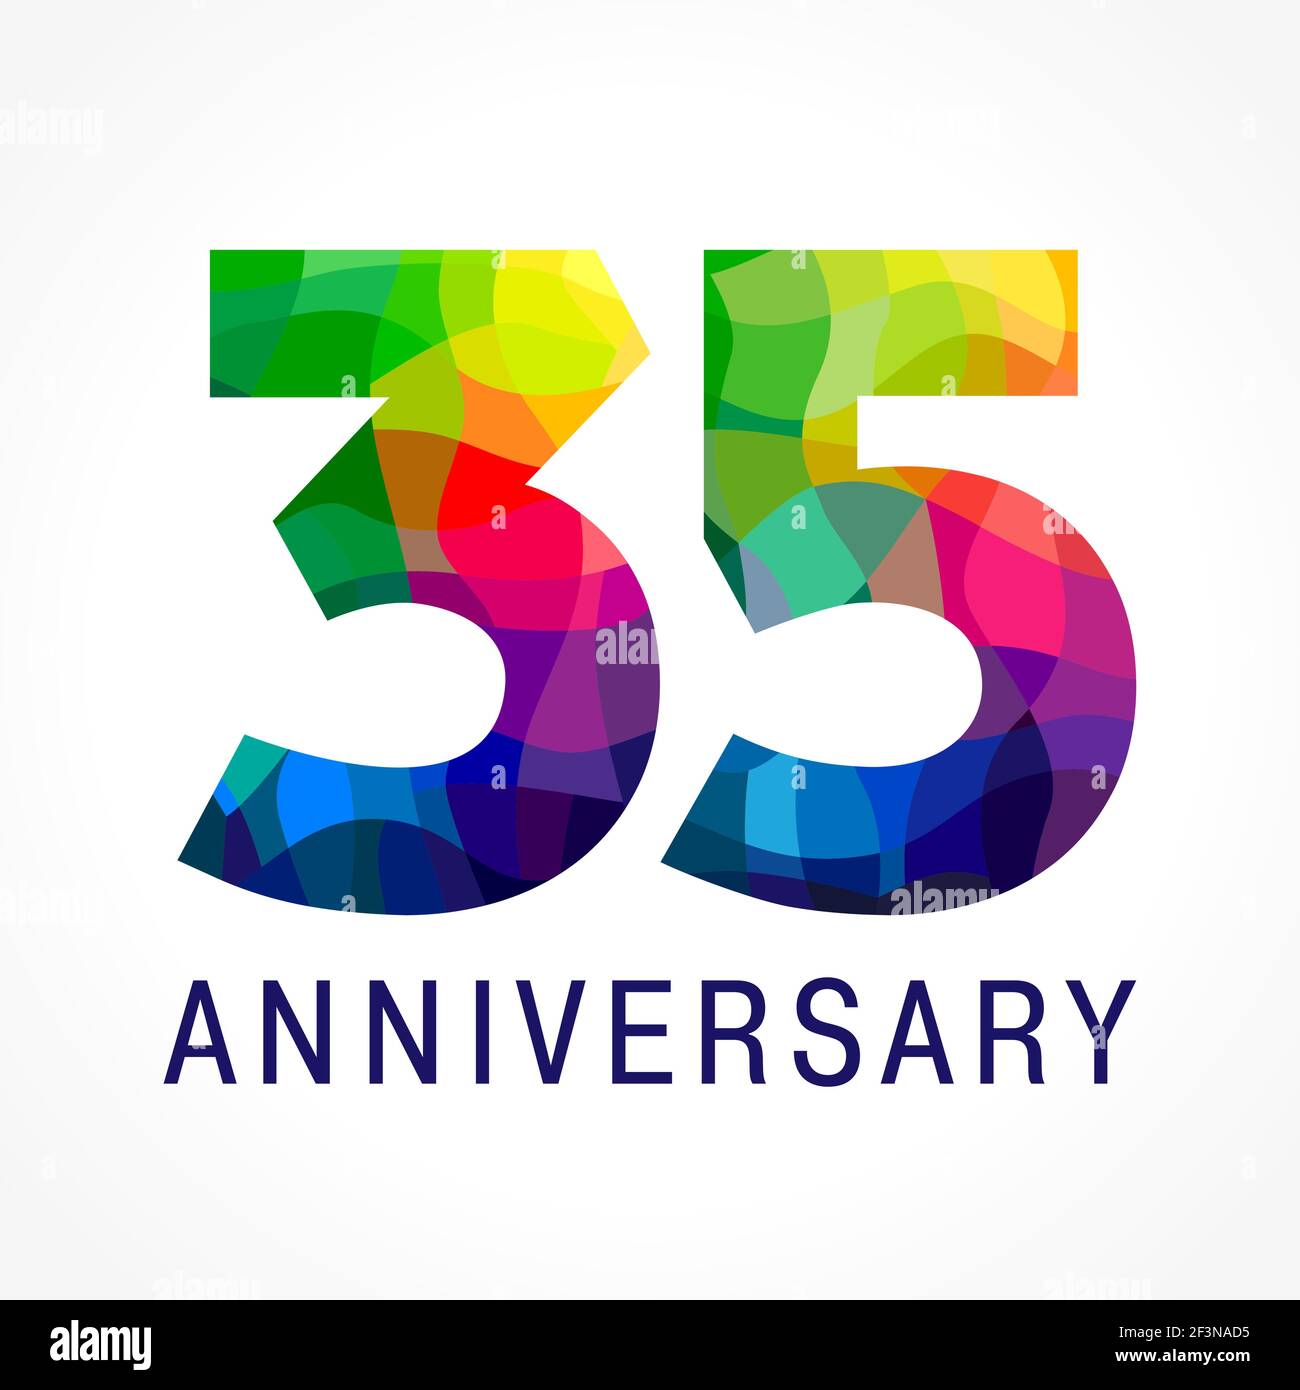 35 Jahre alt feiert farbiges Logo. Jubiläumsnummern 35. Glänzende Facette gratet Logo. Grüße im Stil von 3D. Mosaikboden aus Buntglas Stock Vektor